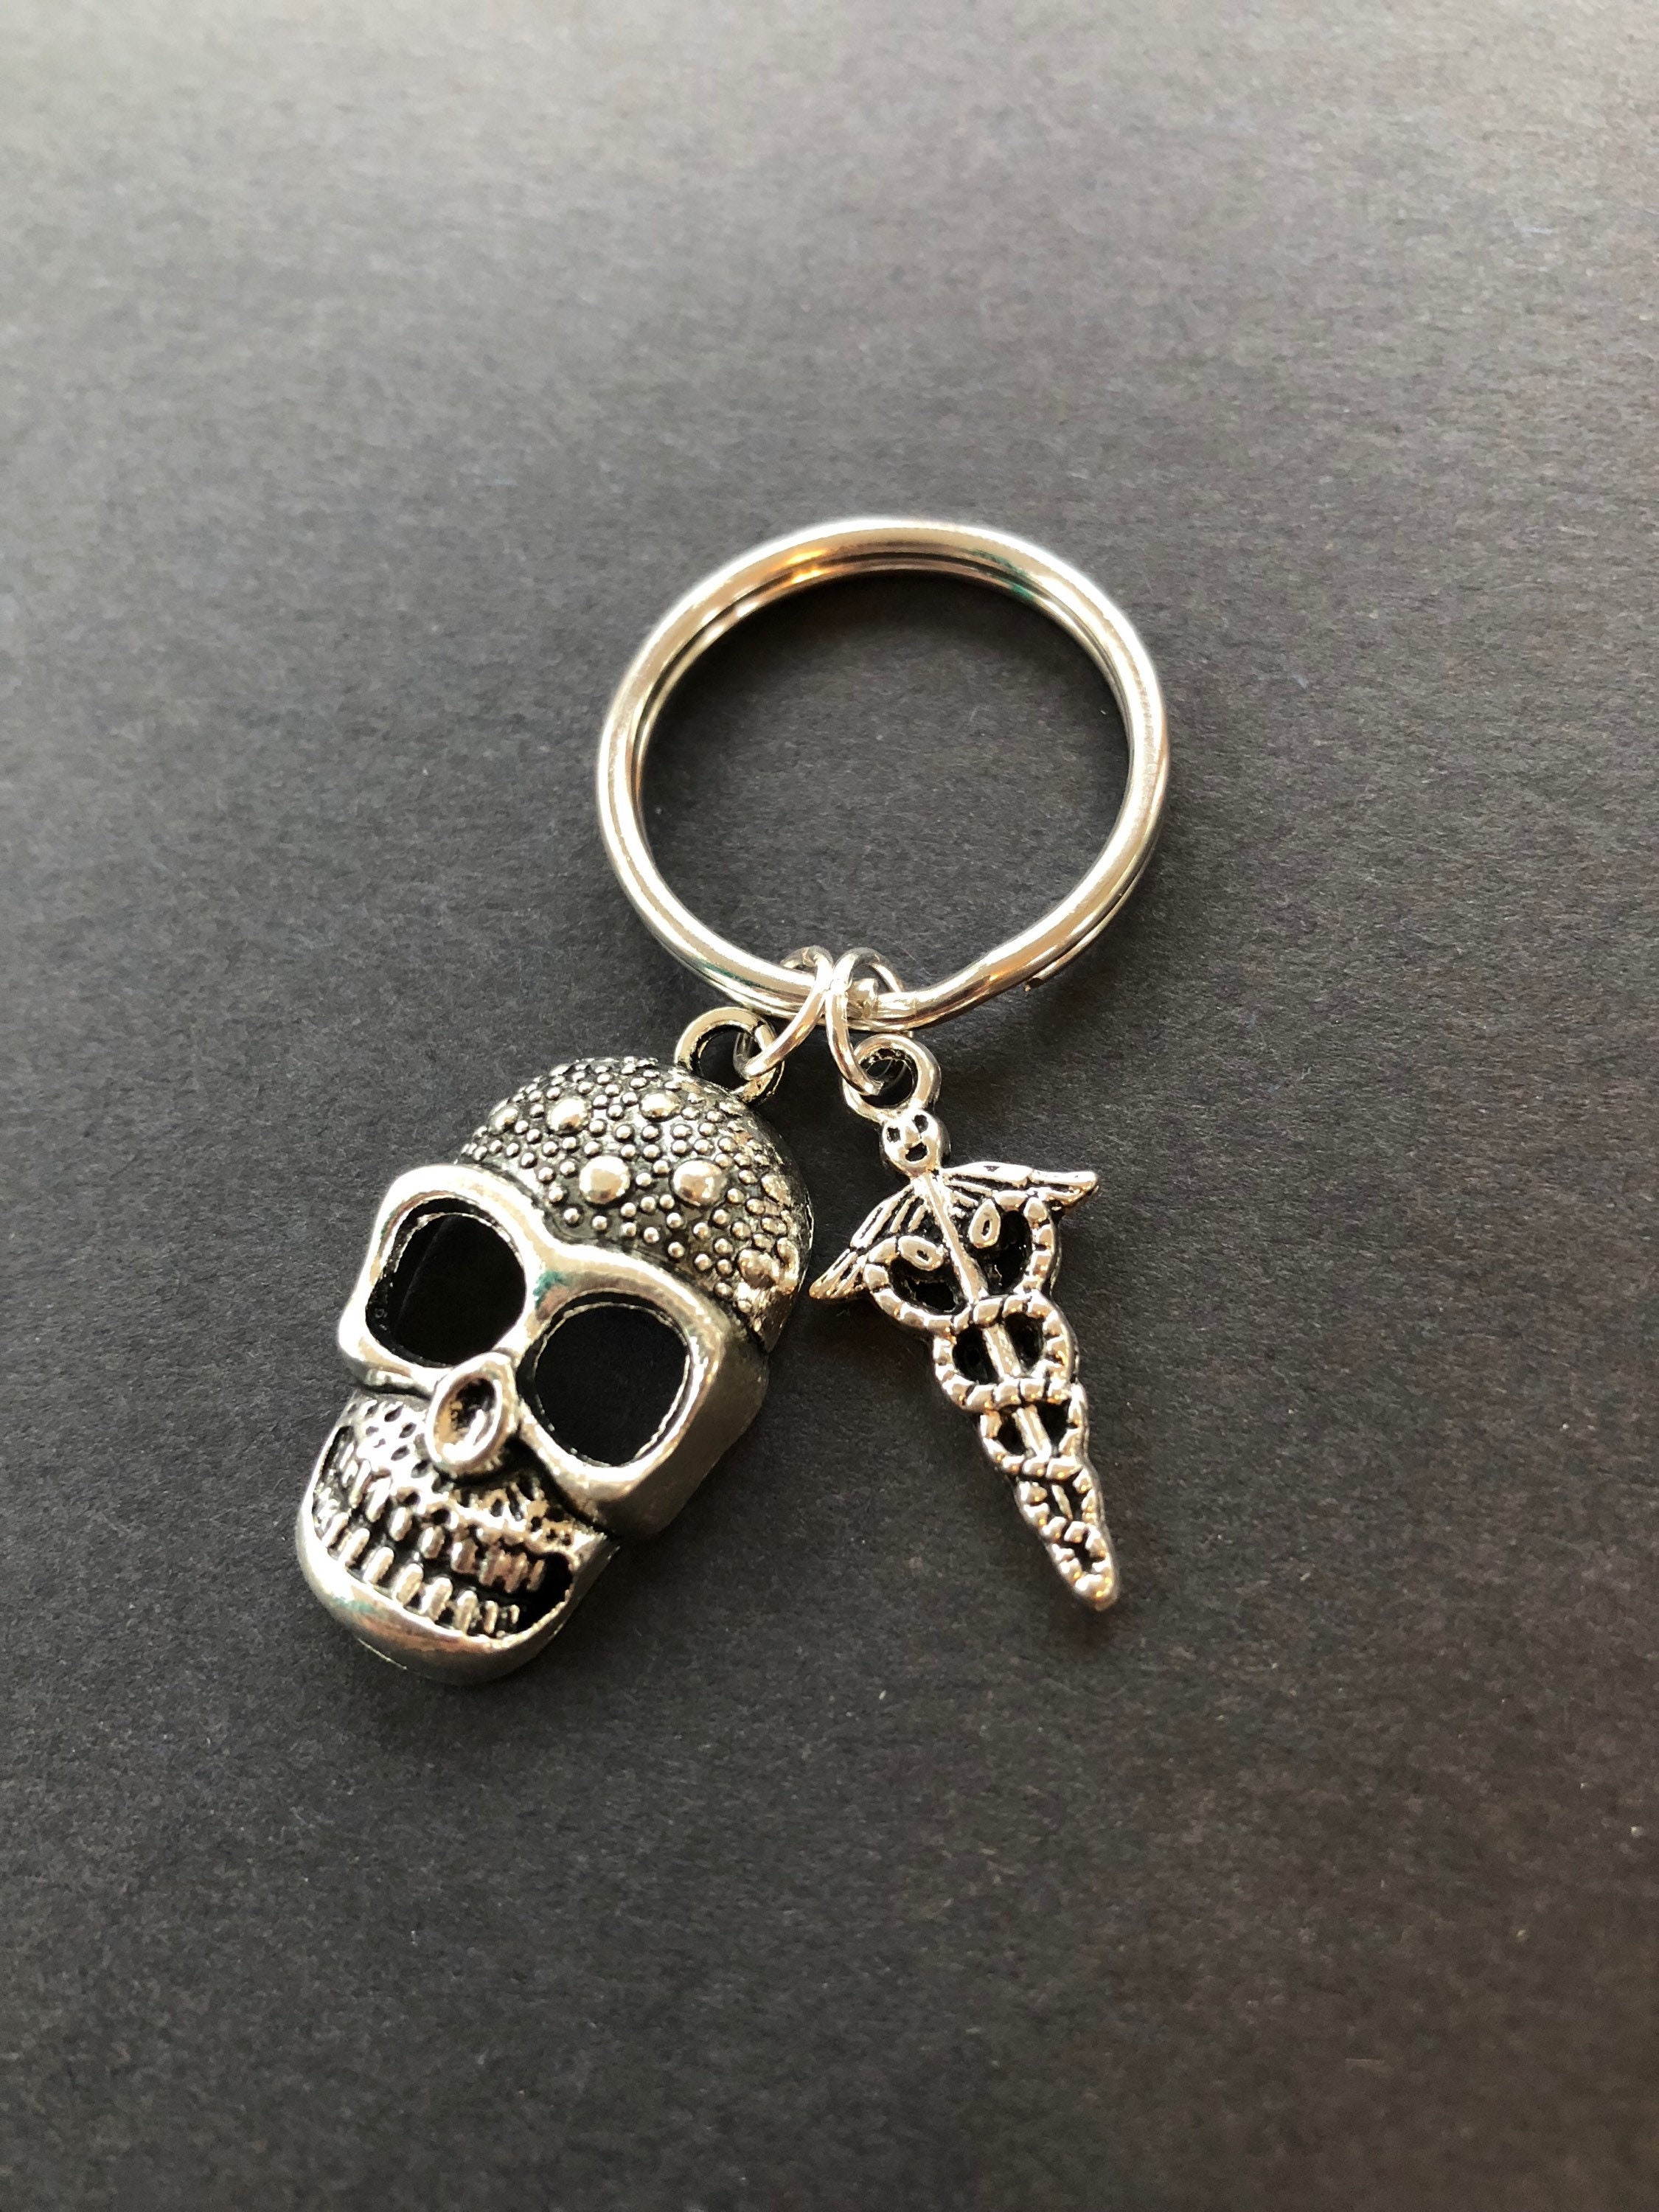 Xray Tech Gift Skull Keychain Caduceus RT RN Heart Sugar Skull | Etsy